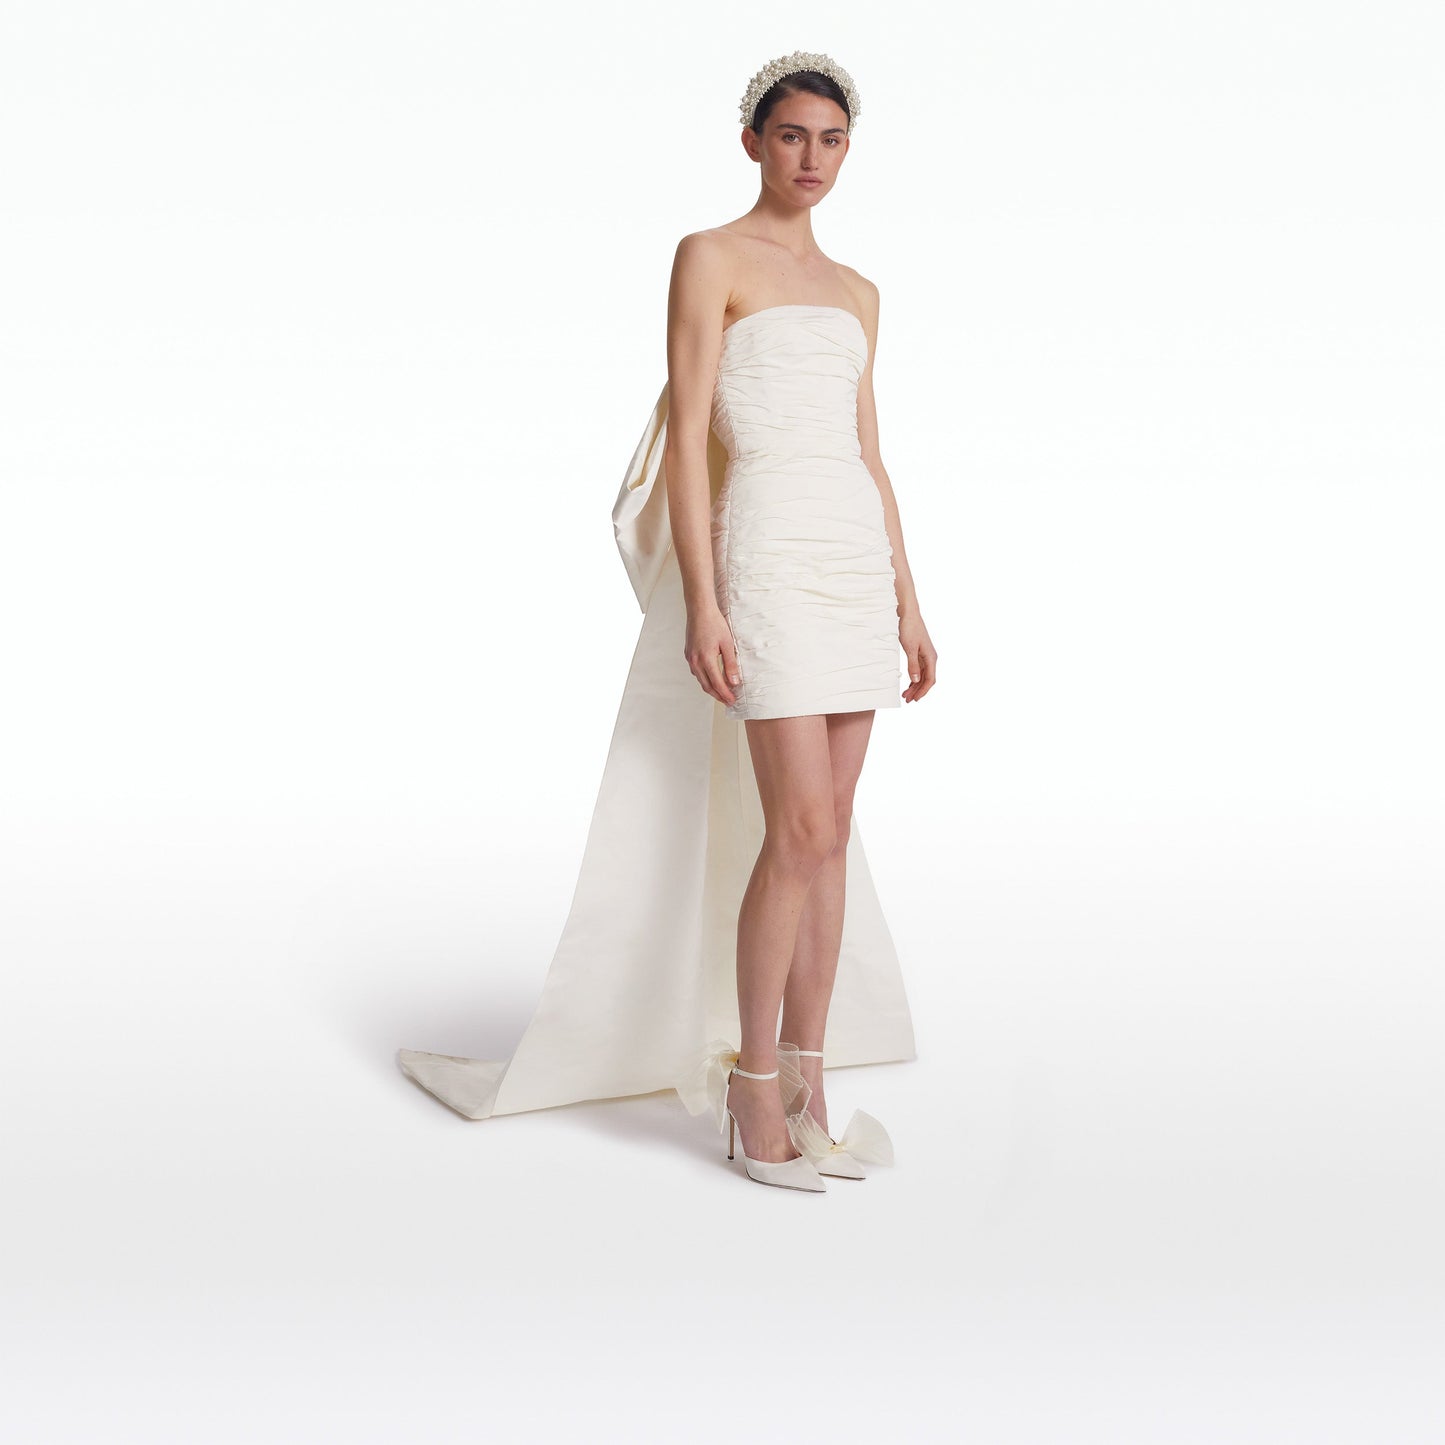 Camillae Ivory Short Dress